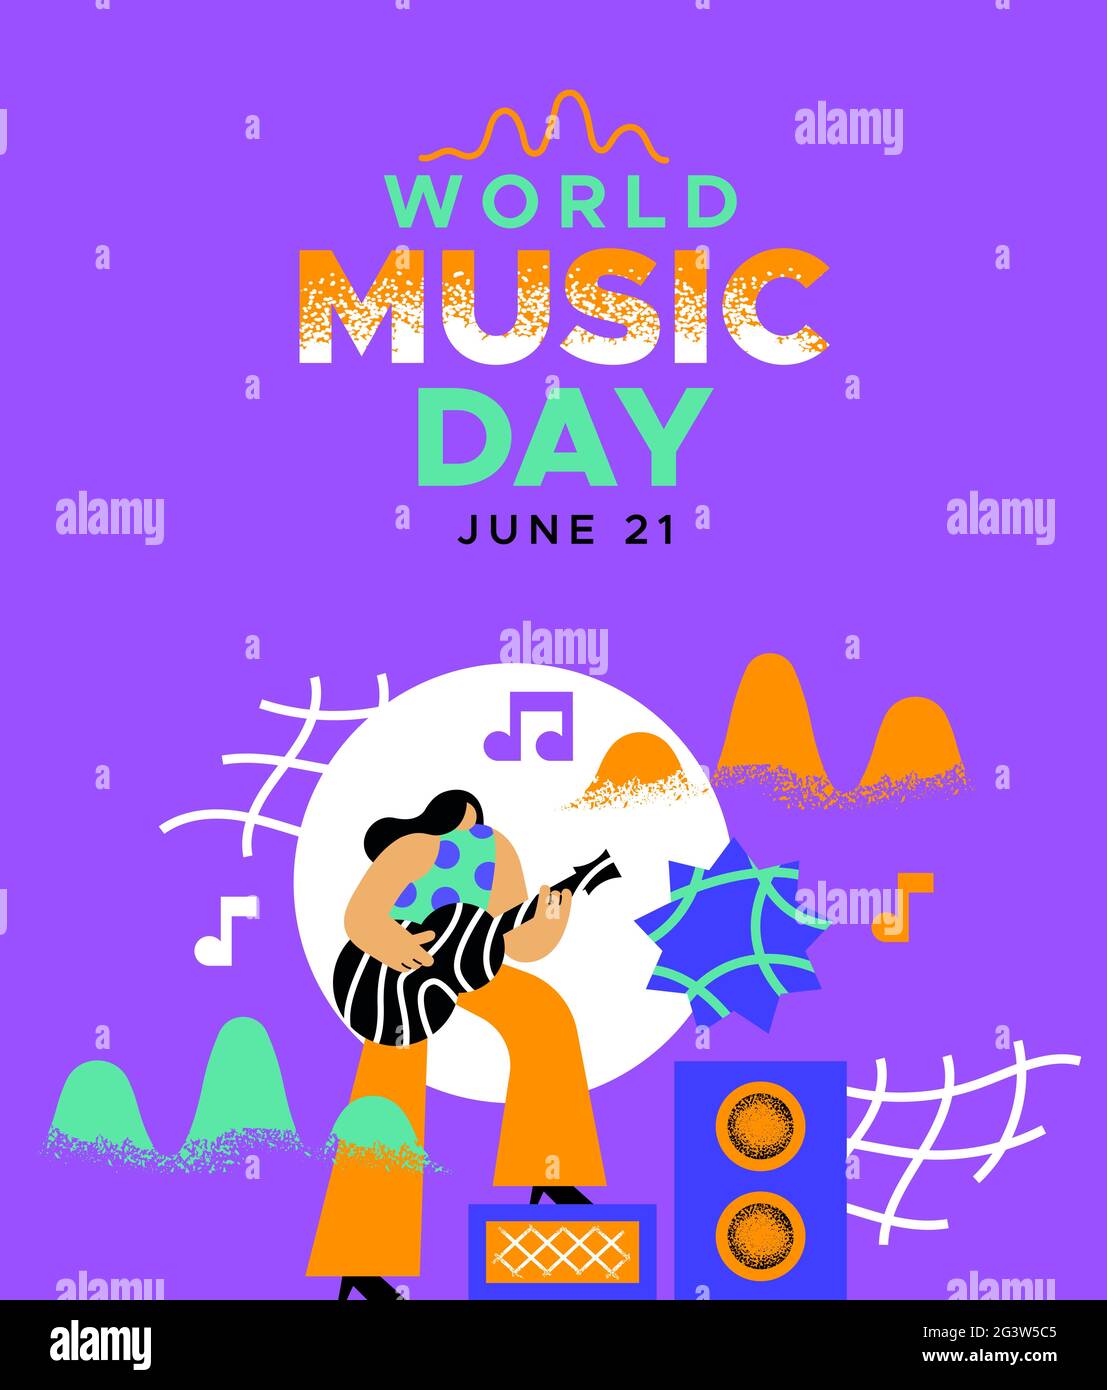 World Music Day web banner illustrazione di una donna musicista che suona la chitarra in moderno colorato stile cartoon piatto. Evento musicale alla moda per le vacanze design fo Illustrazione Vettoriale